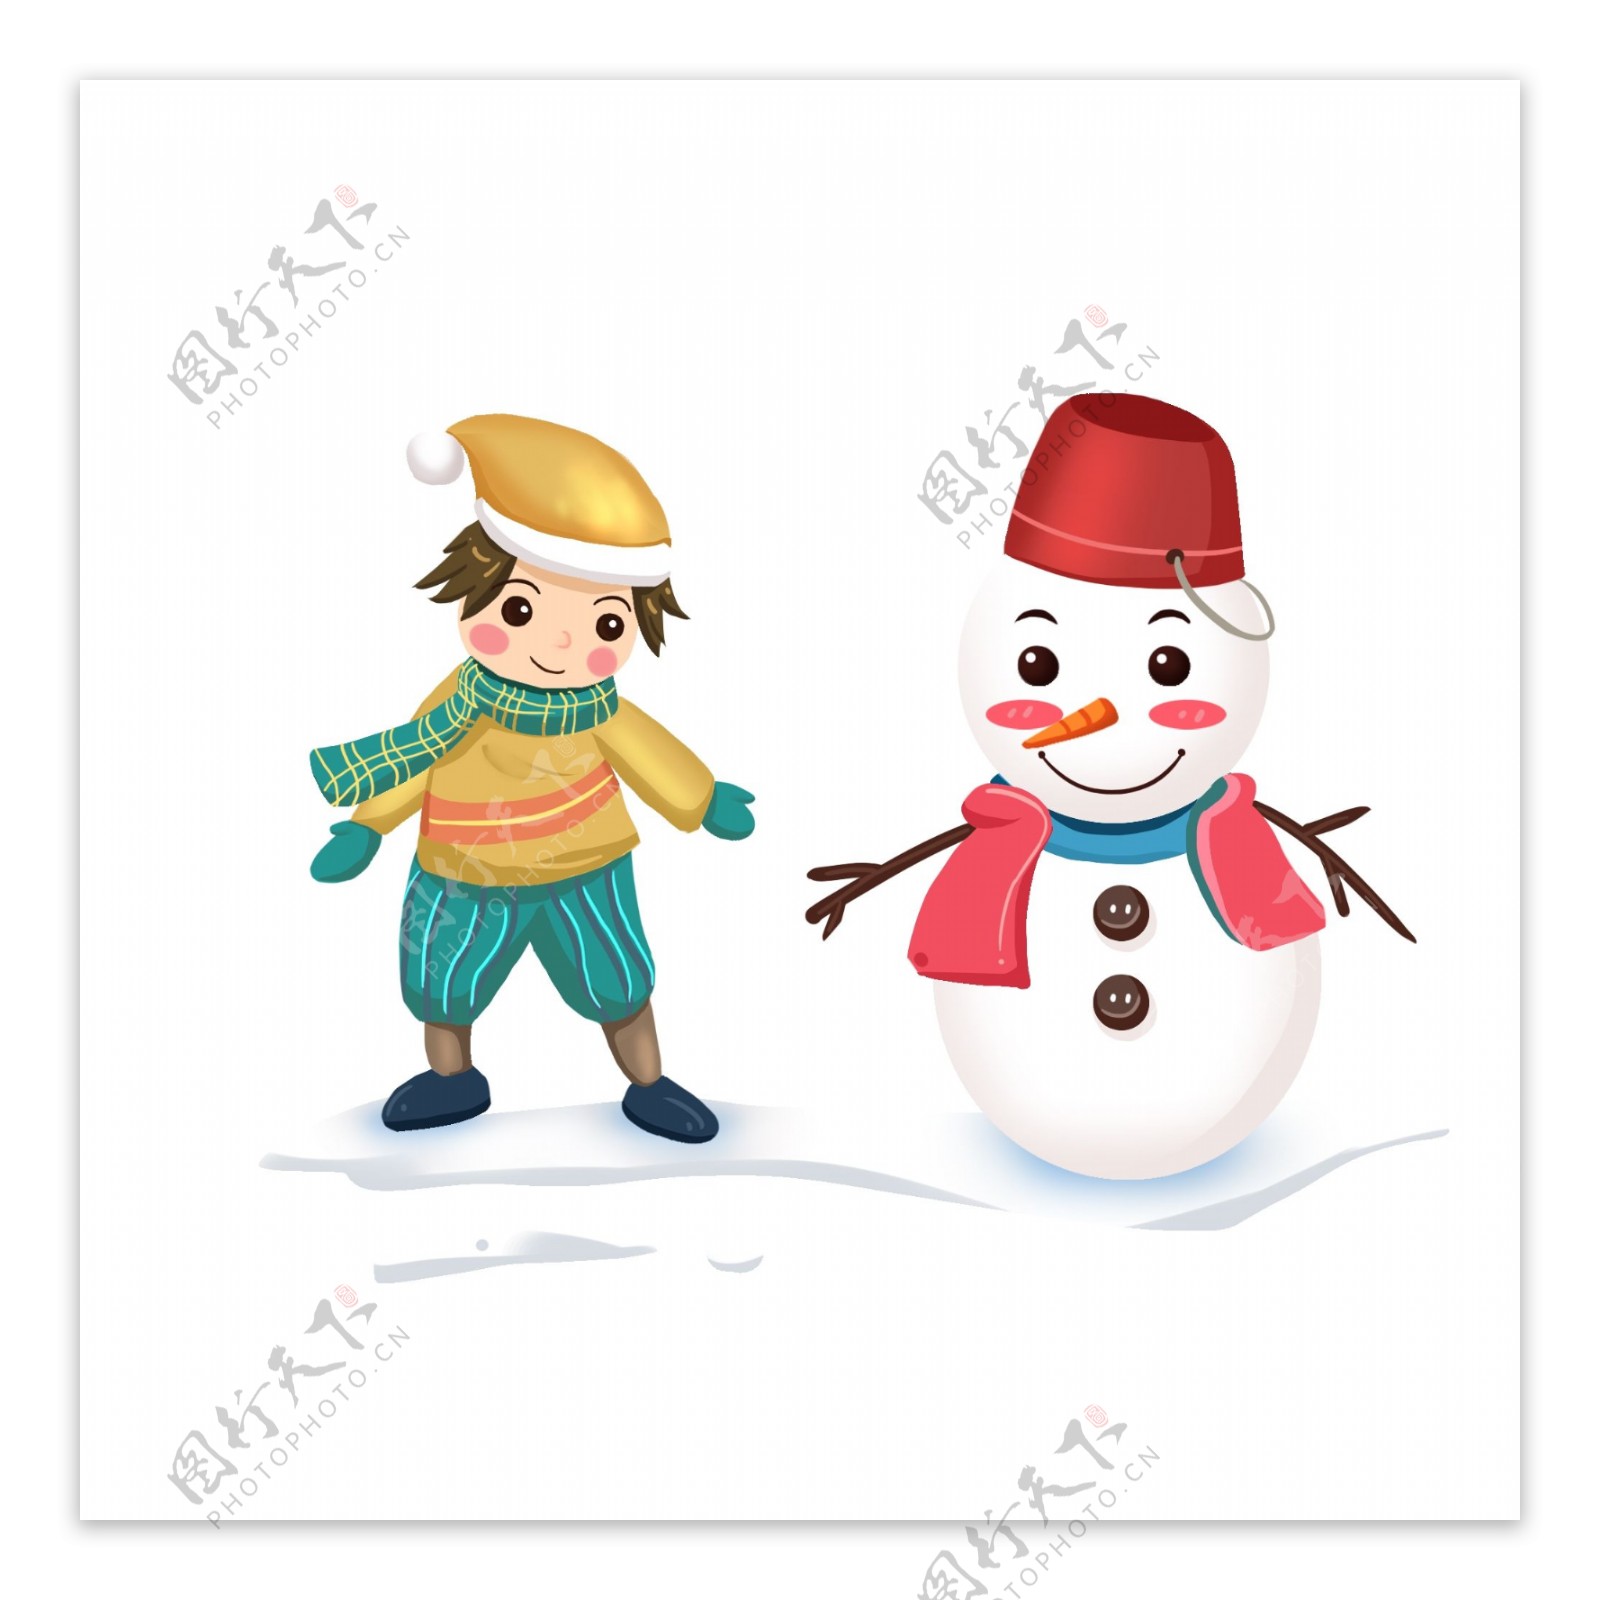 冬季场景雪地场景男孩和雪人